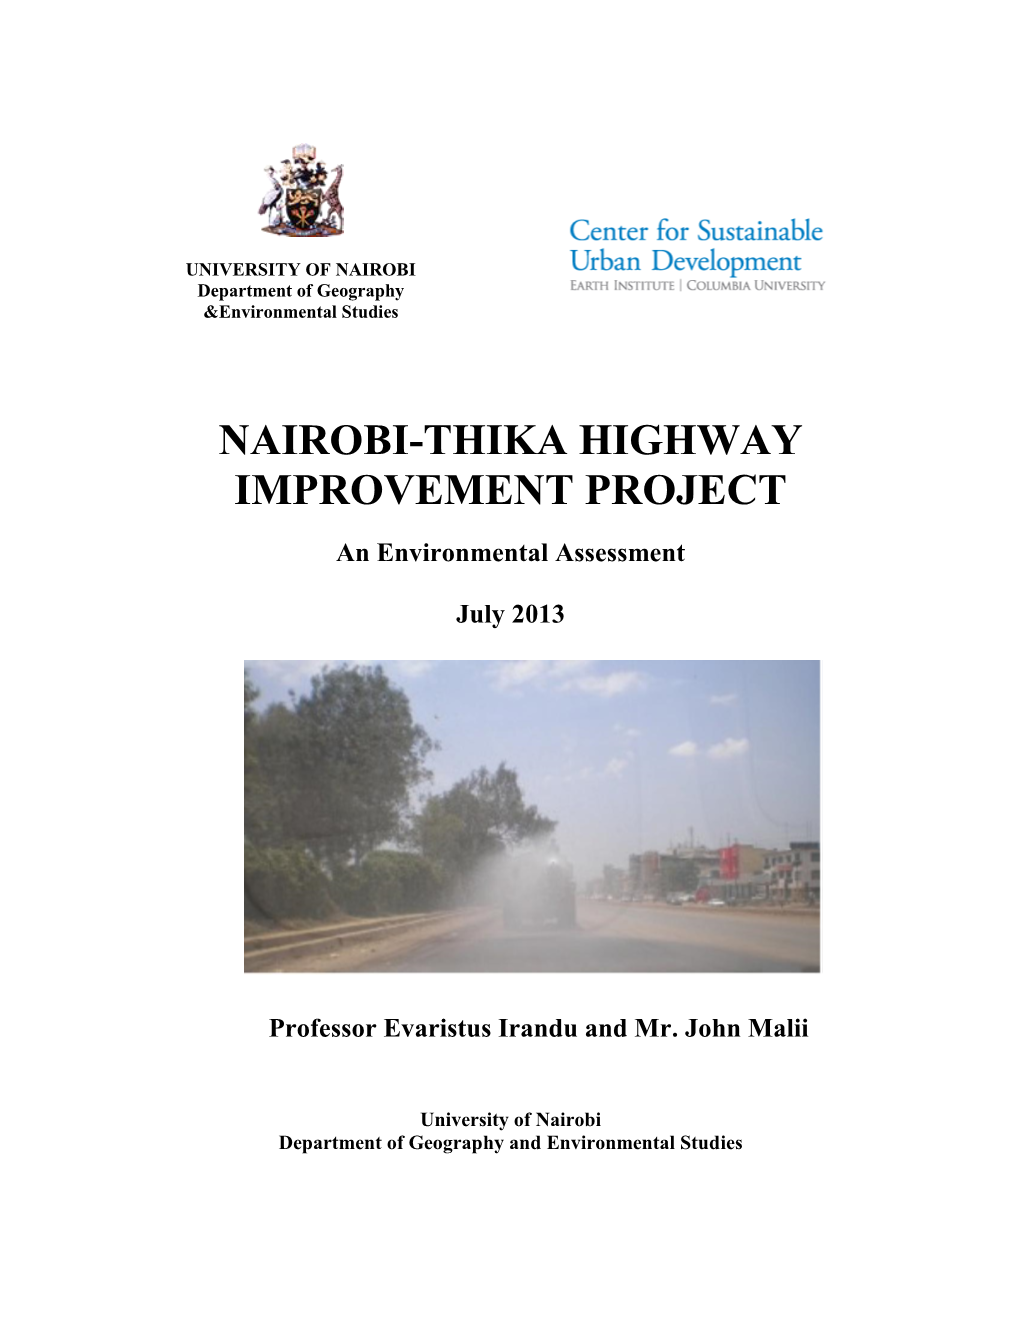 Nairobi-Thika Highway Improvement Project